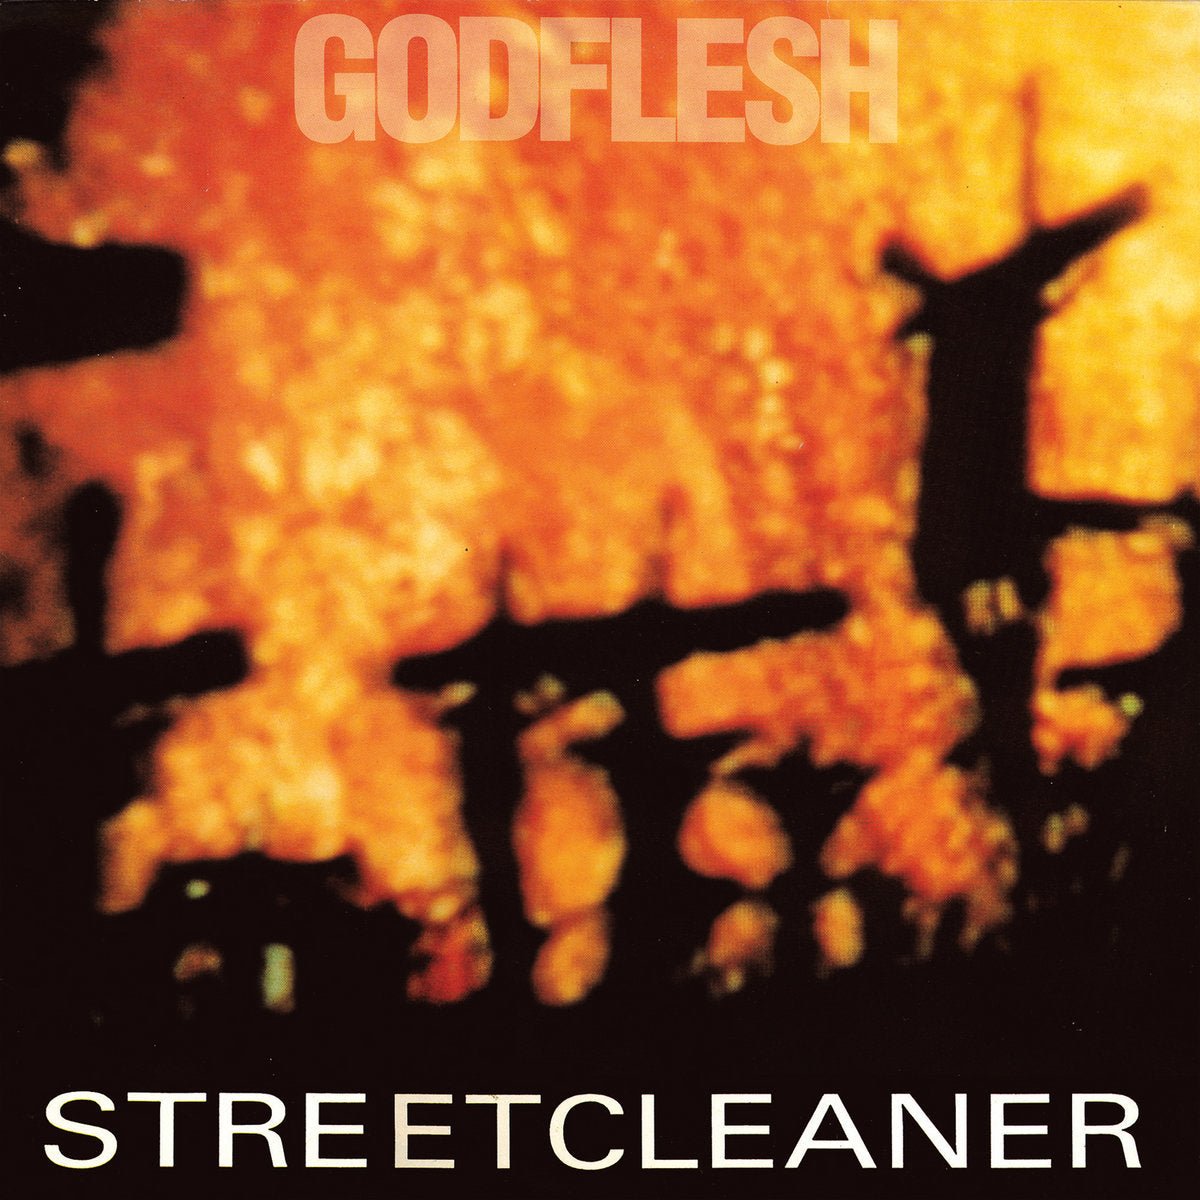 Godflesh - Streetcleaner LP - Vinyl - Earache